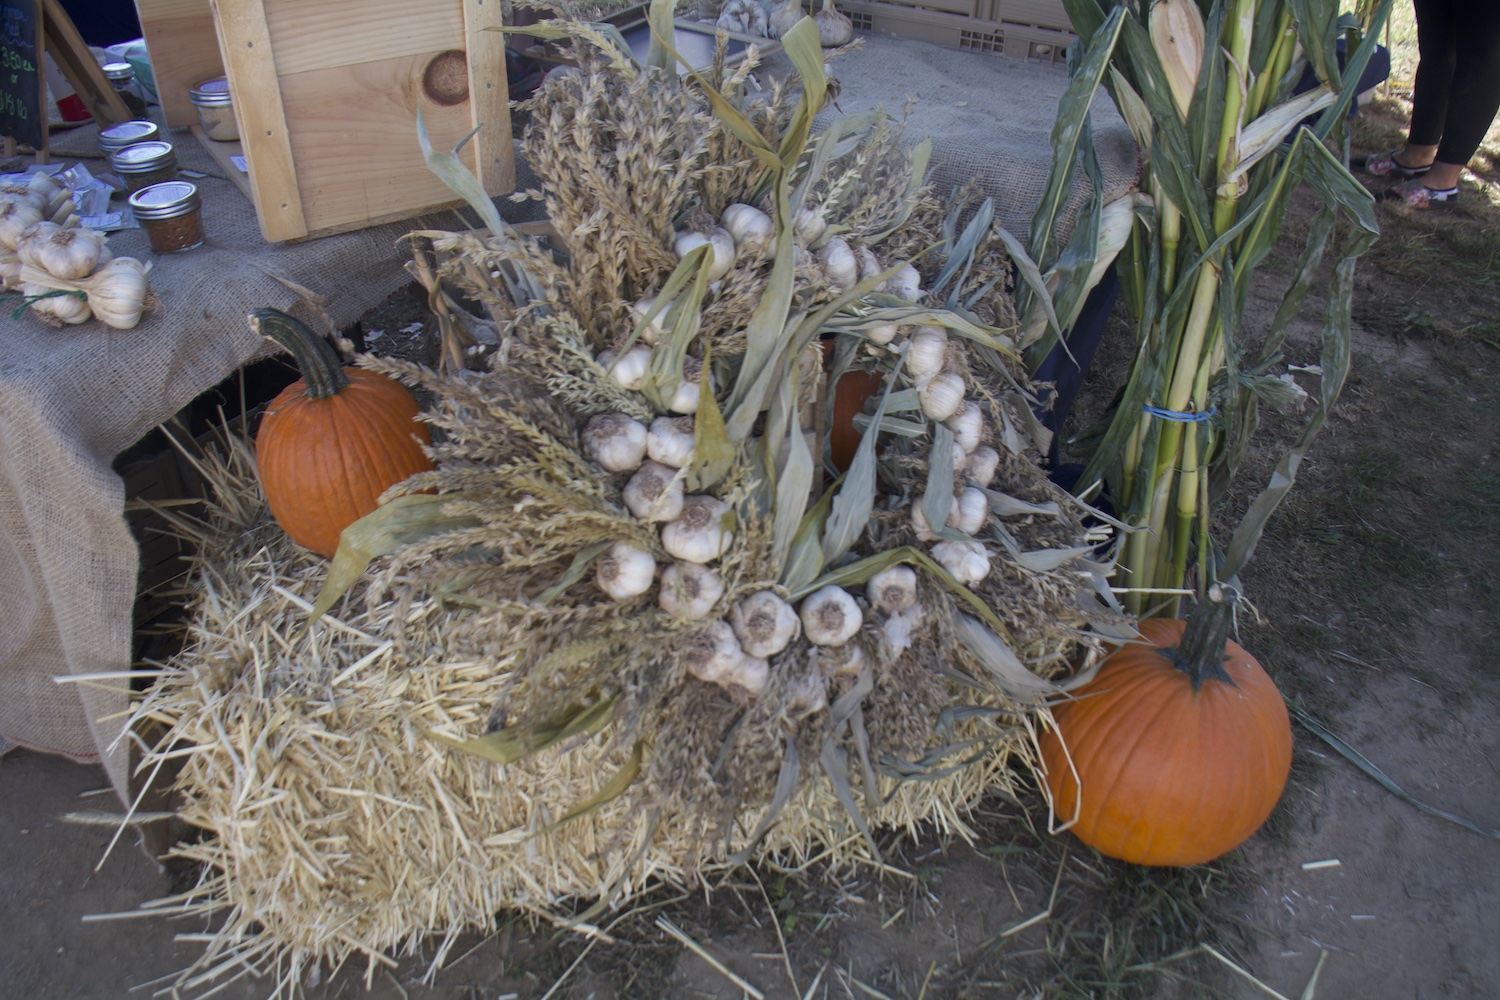 Garlic wreath at the Garlic Festival